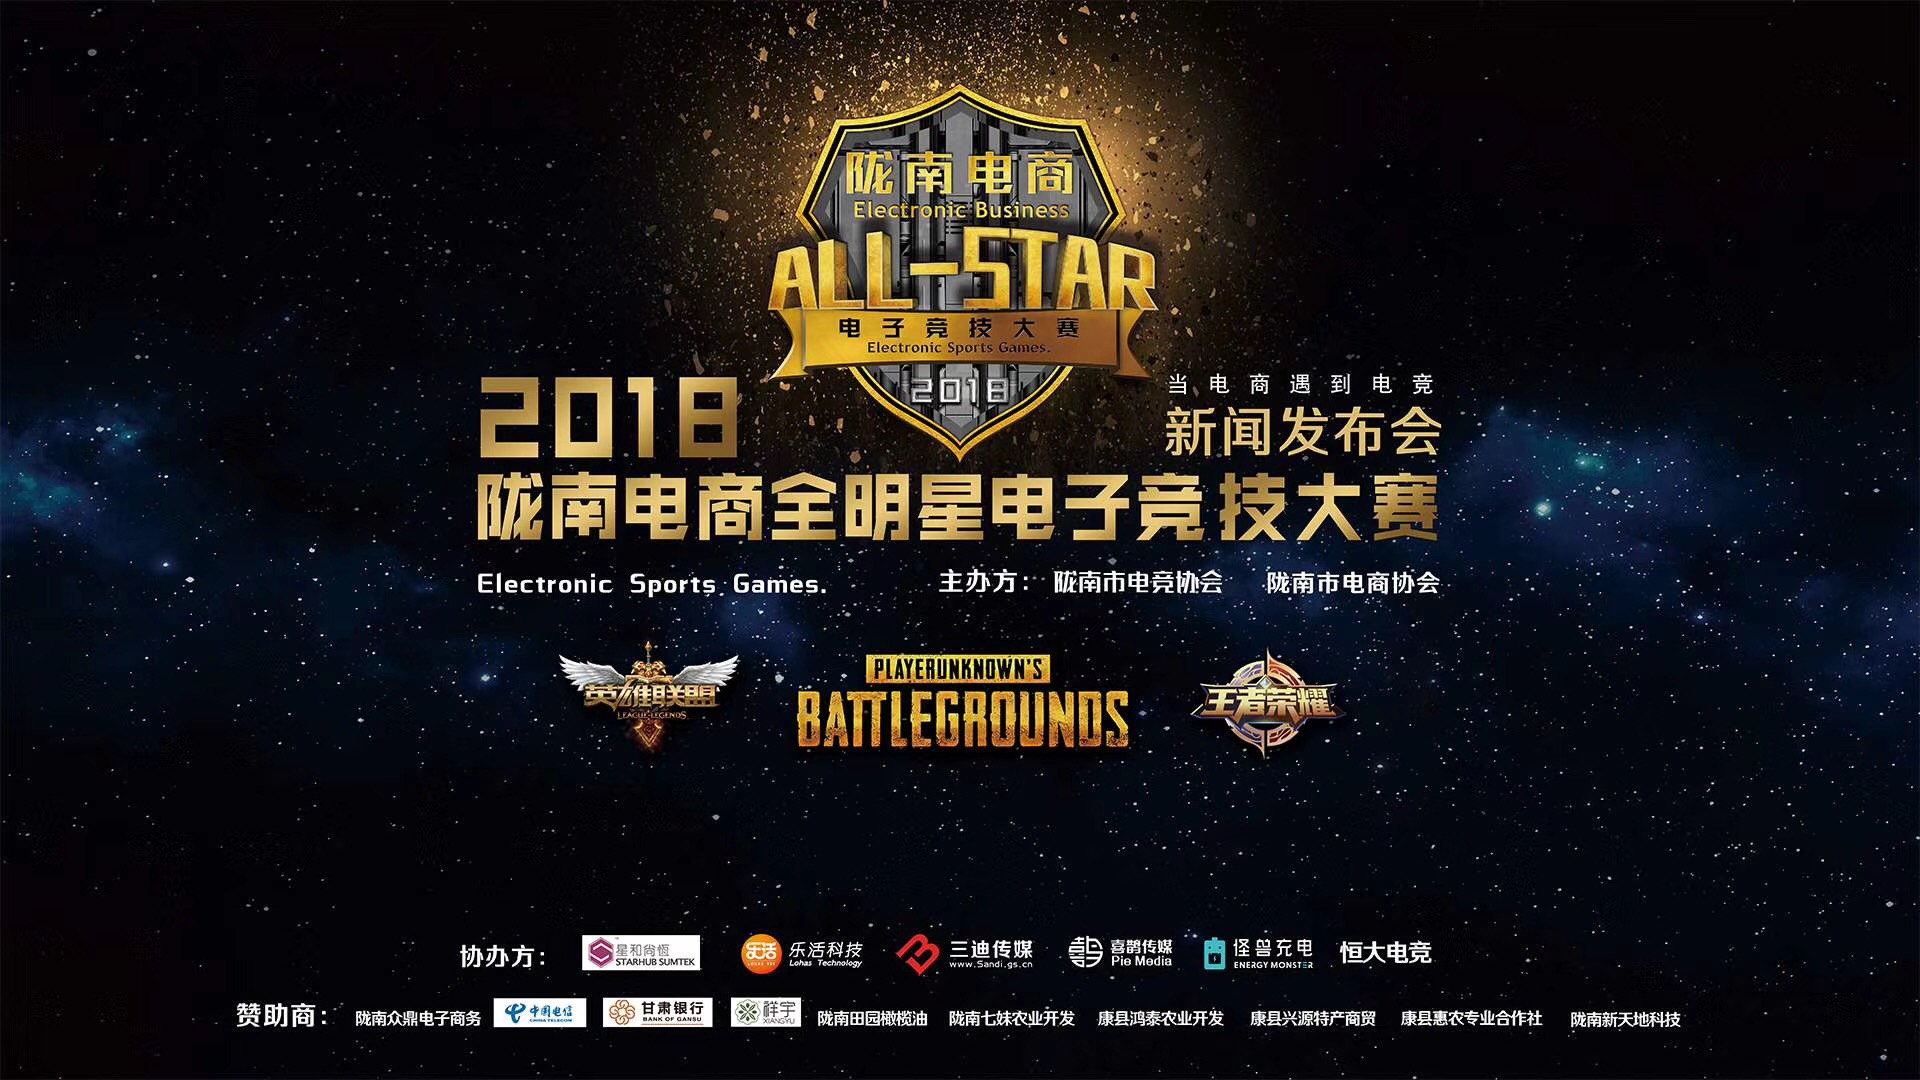 2018年度隴南電商全明星電子競技大賽